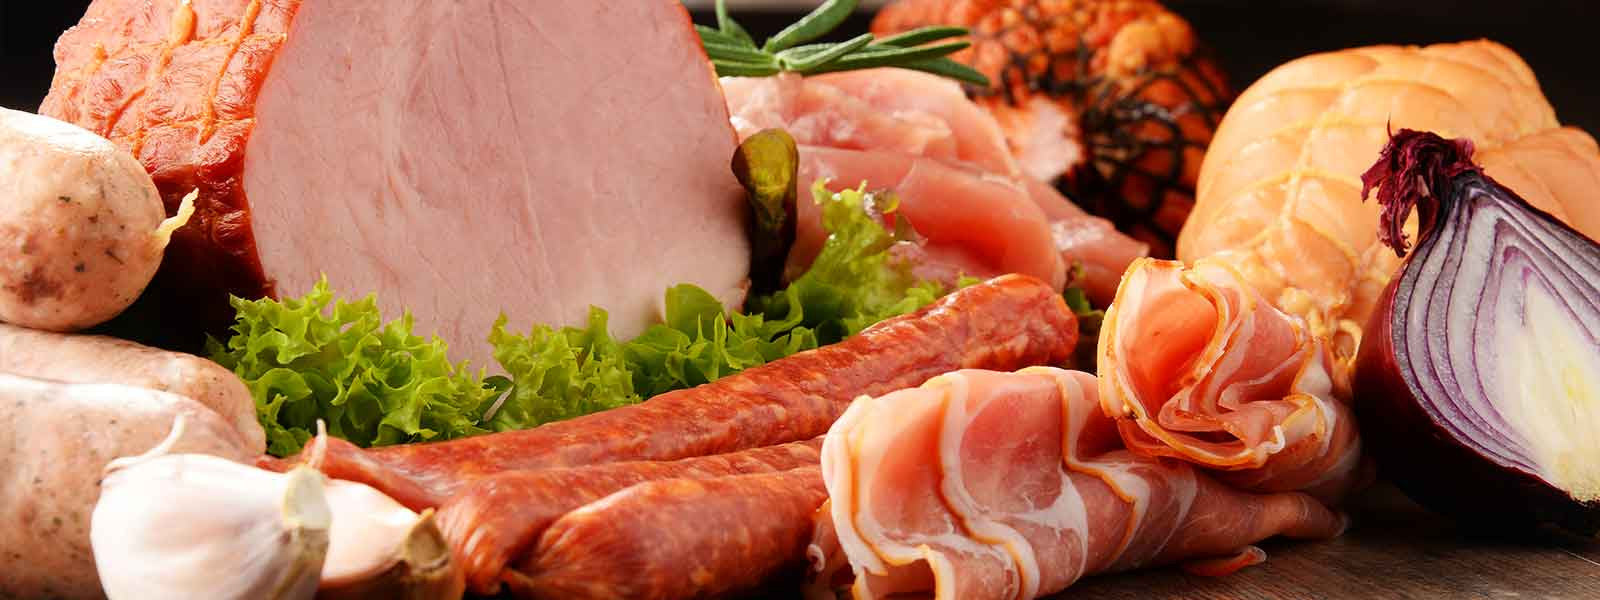 Nitrates Hams & Bacon